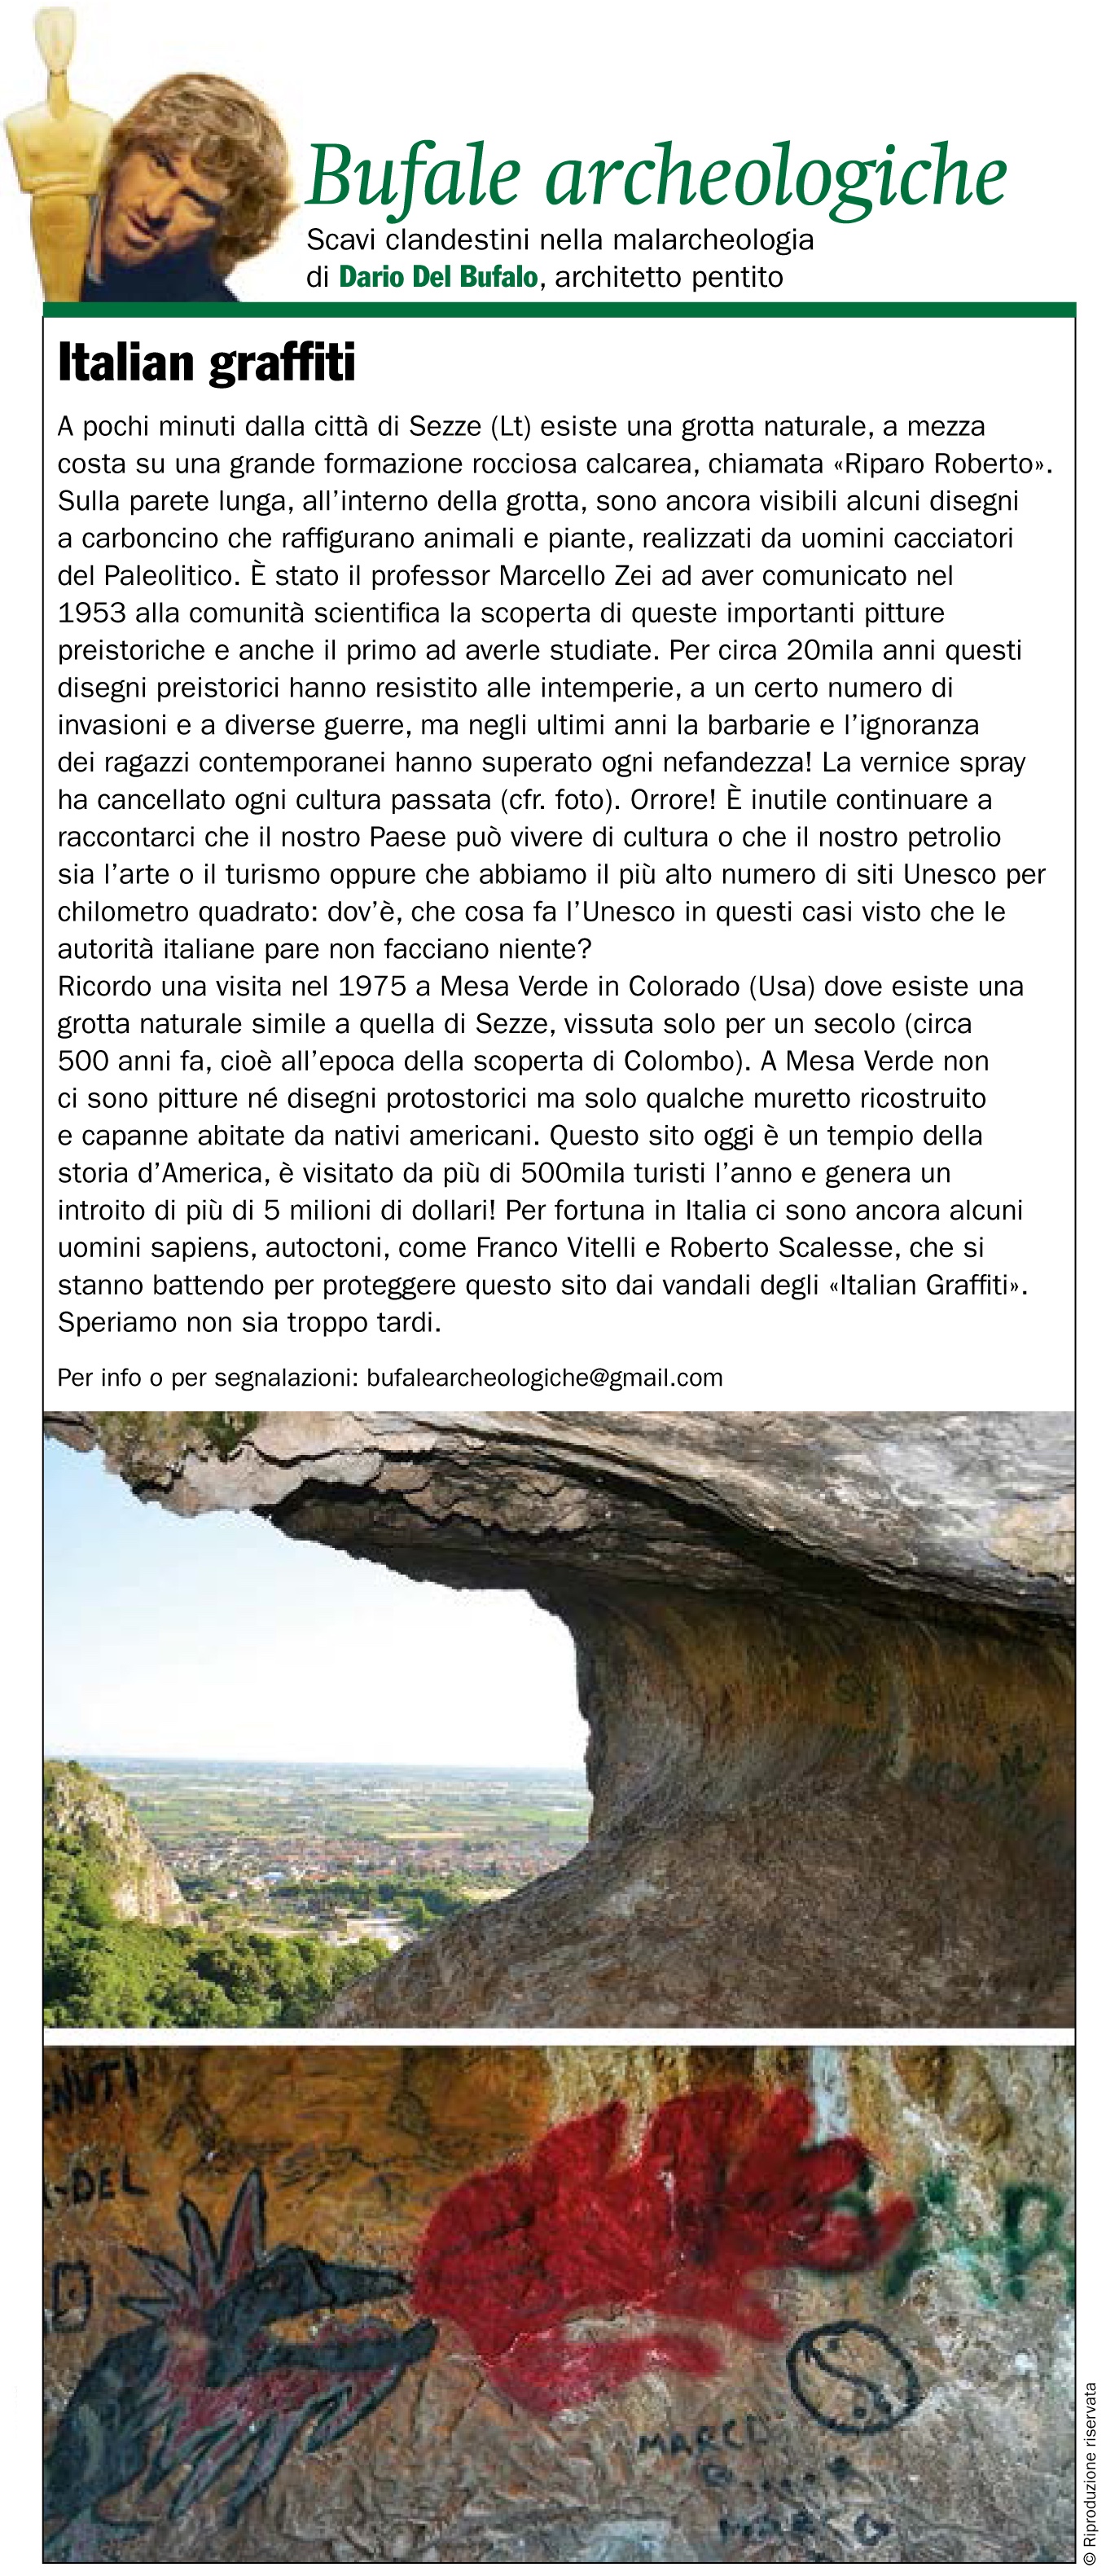 Bufale-Archeologiche-Luglio-2017-Giornale-dellArte-Dario-Del-Bufalo